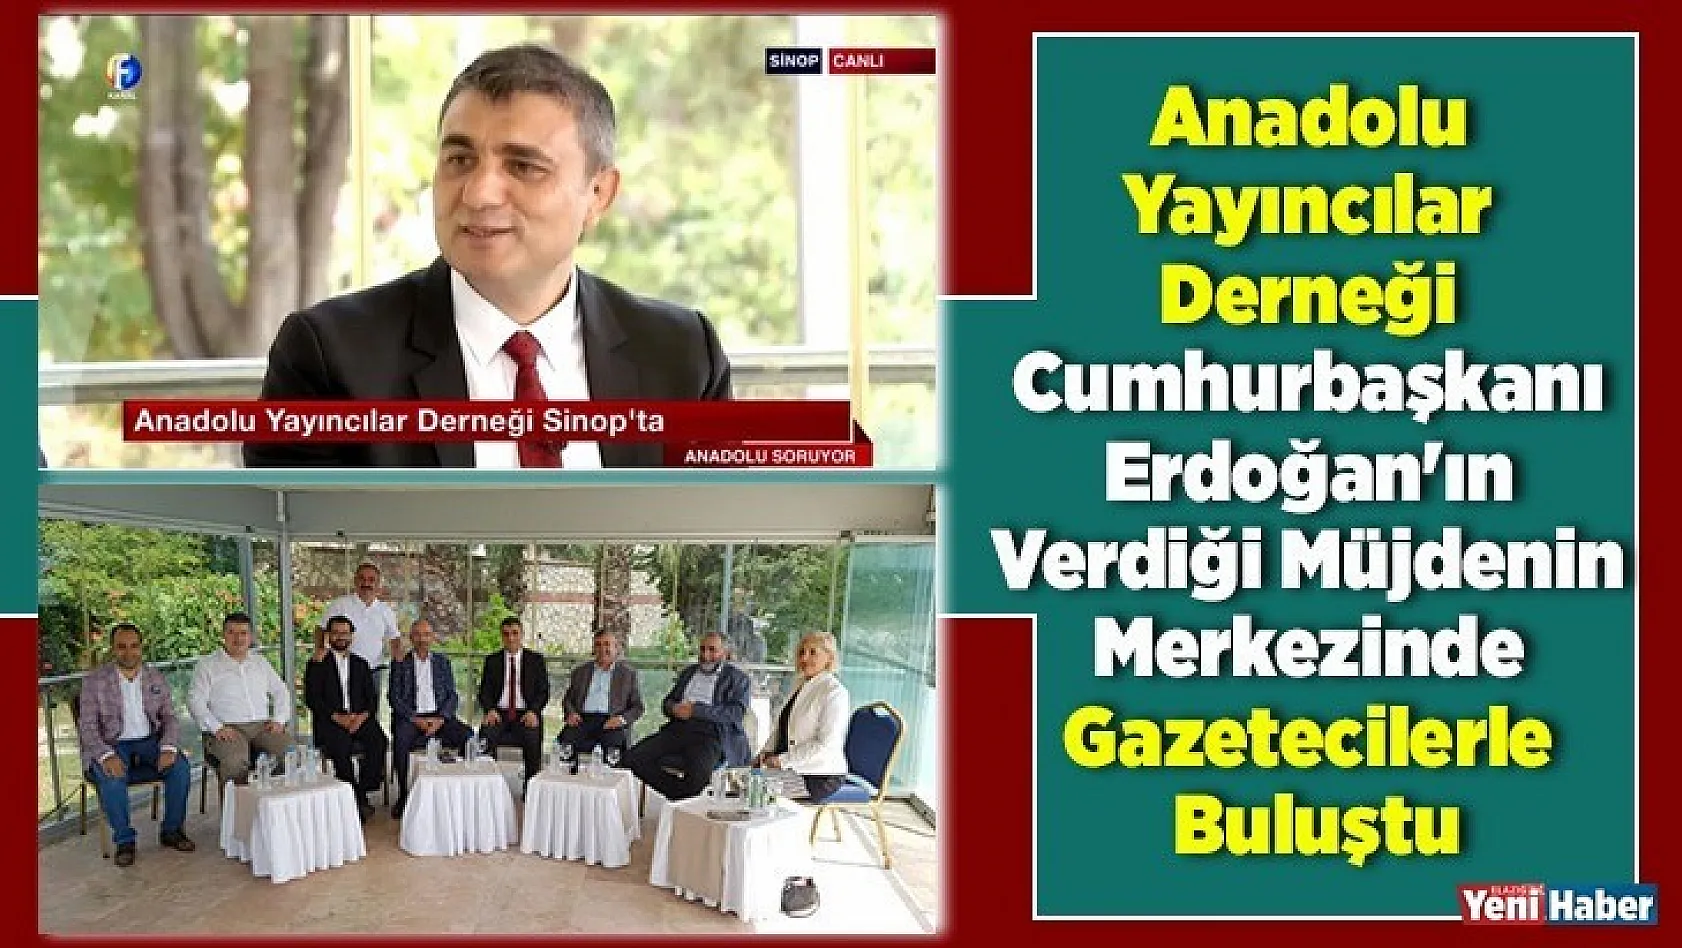 Anadolu Yayıncılar Derneği, Karadeniz'de Gazetecilerle Buluştu